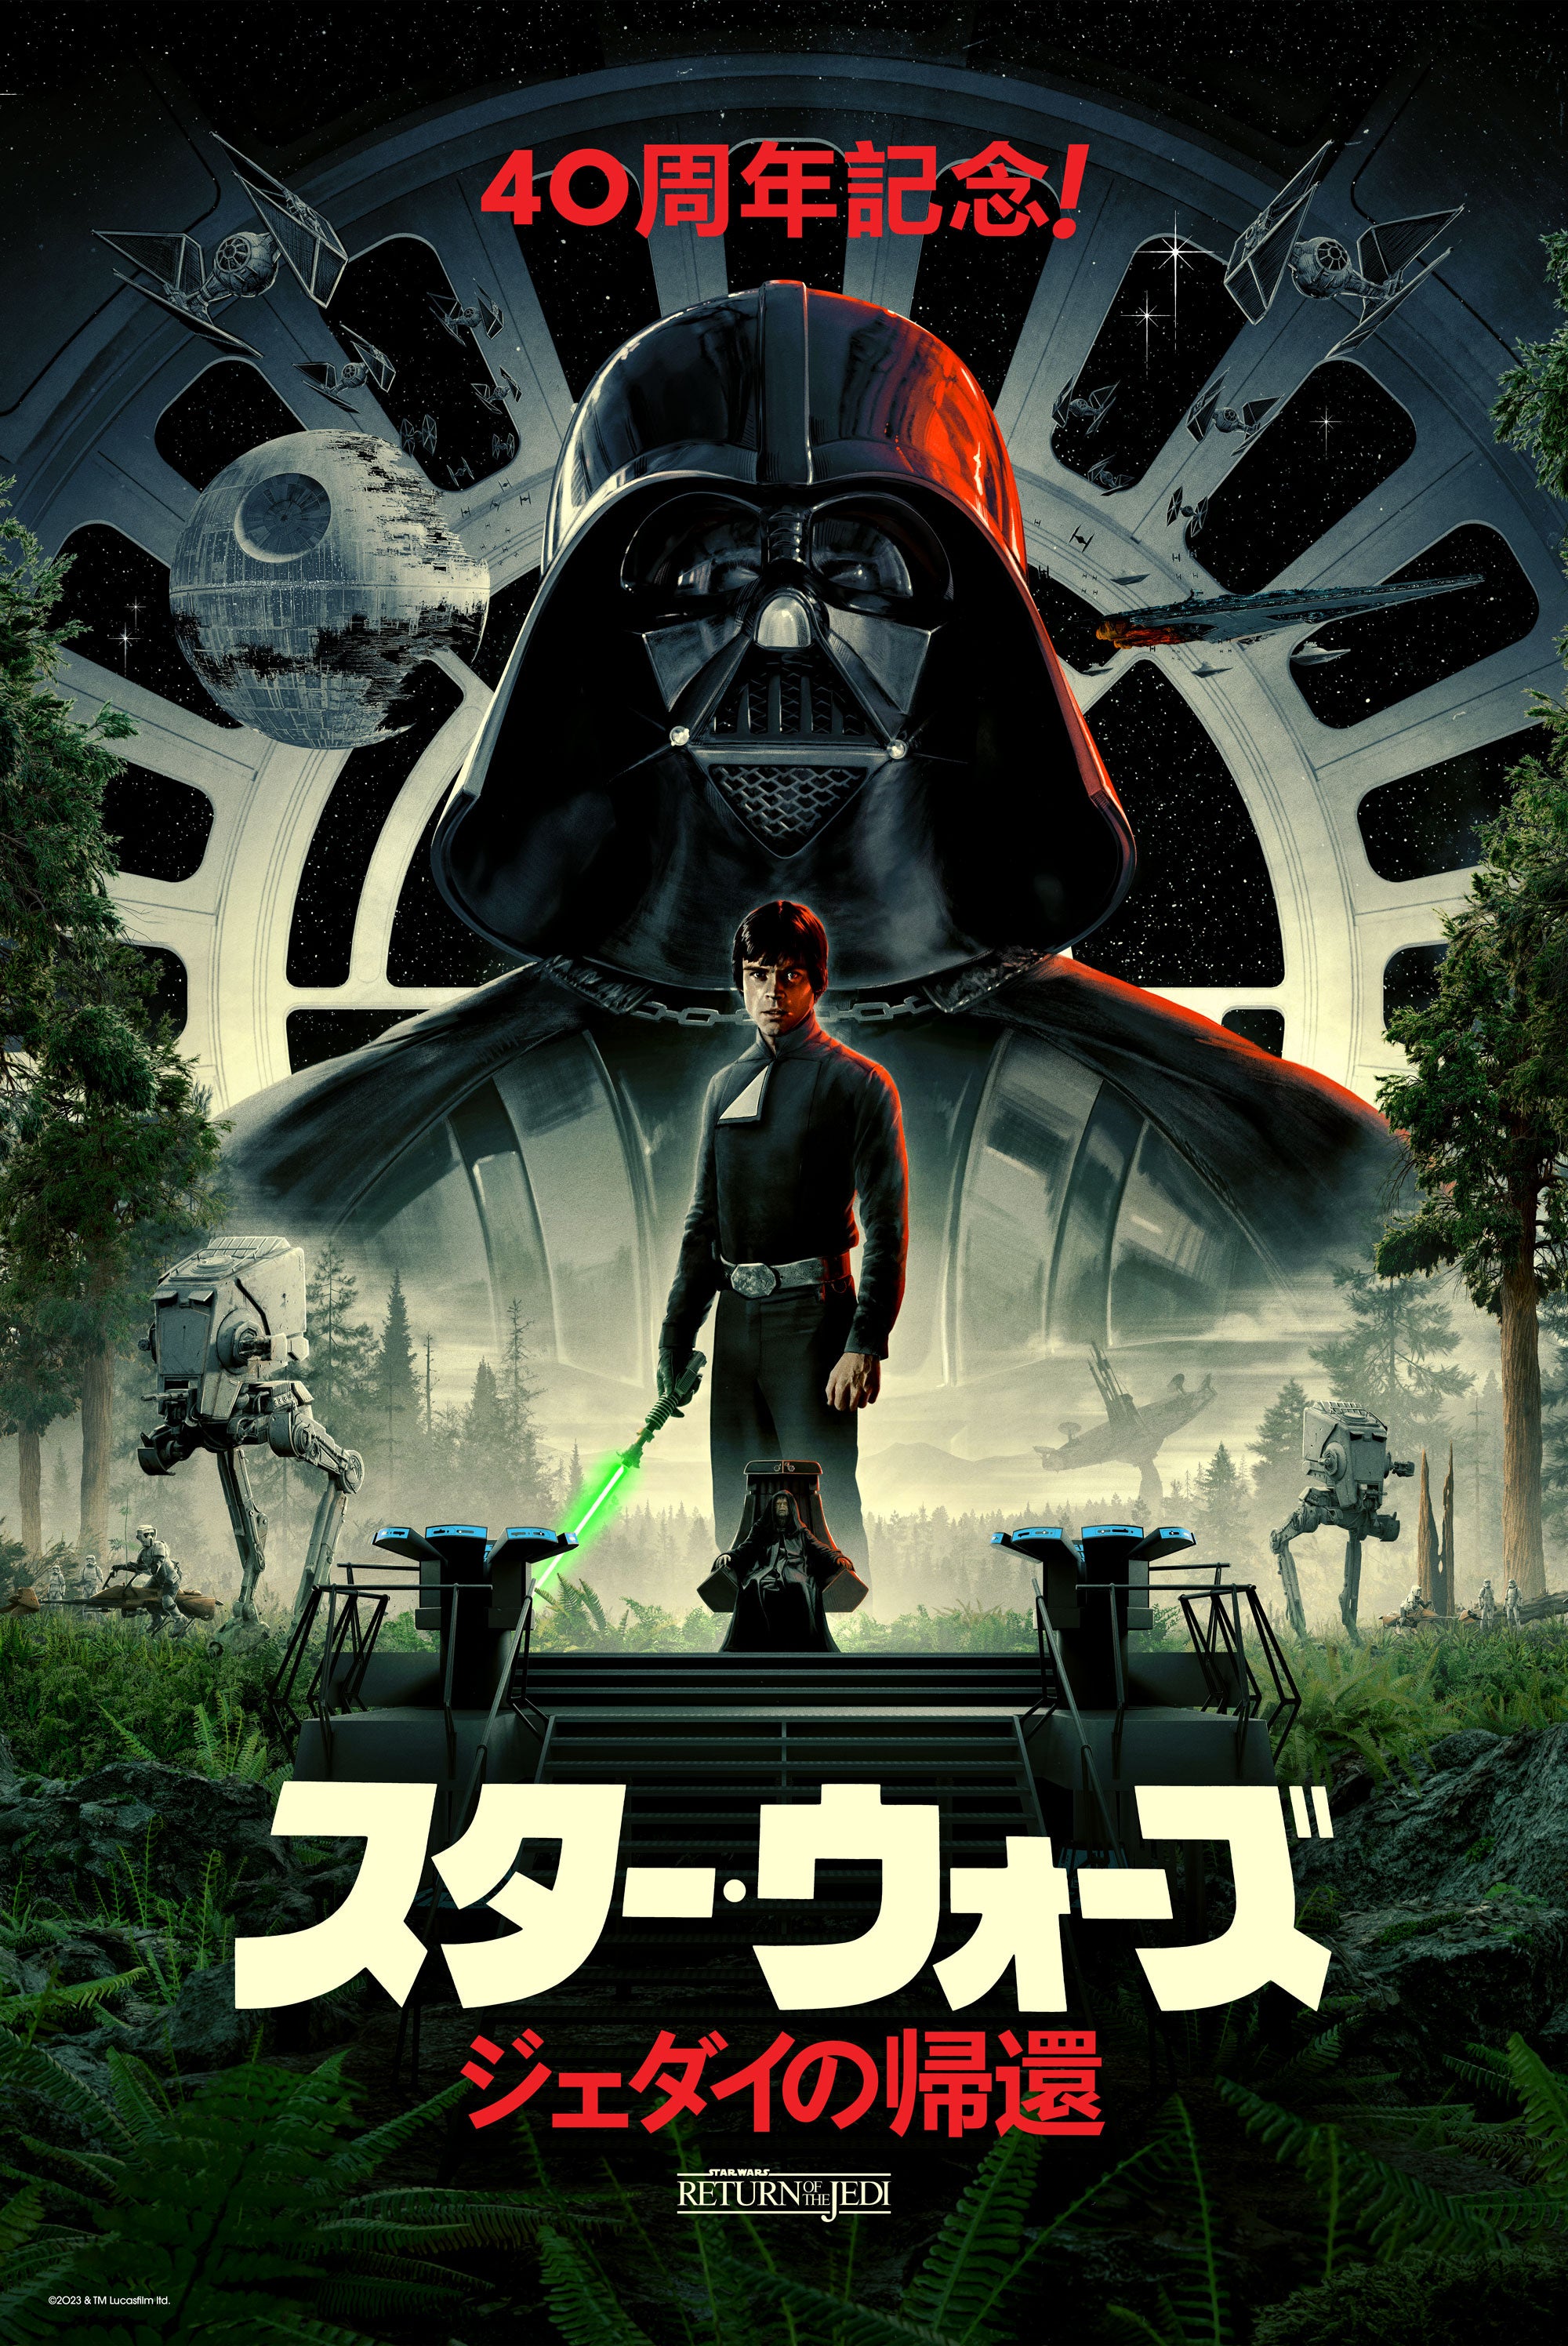 Return of the Jedi by Matt Ferguson; Regular - Japanese - Timed edition (Image: Lucasfilm)